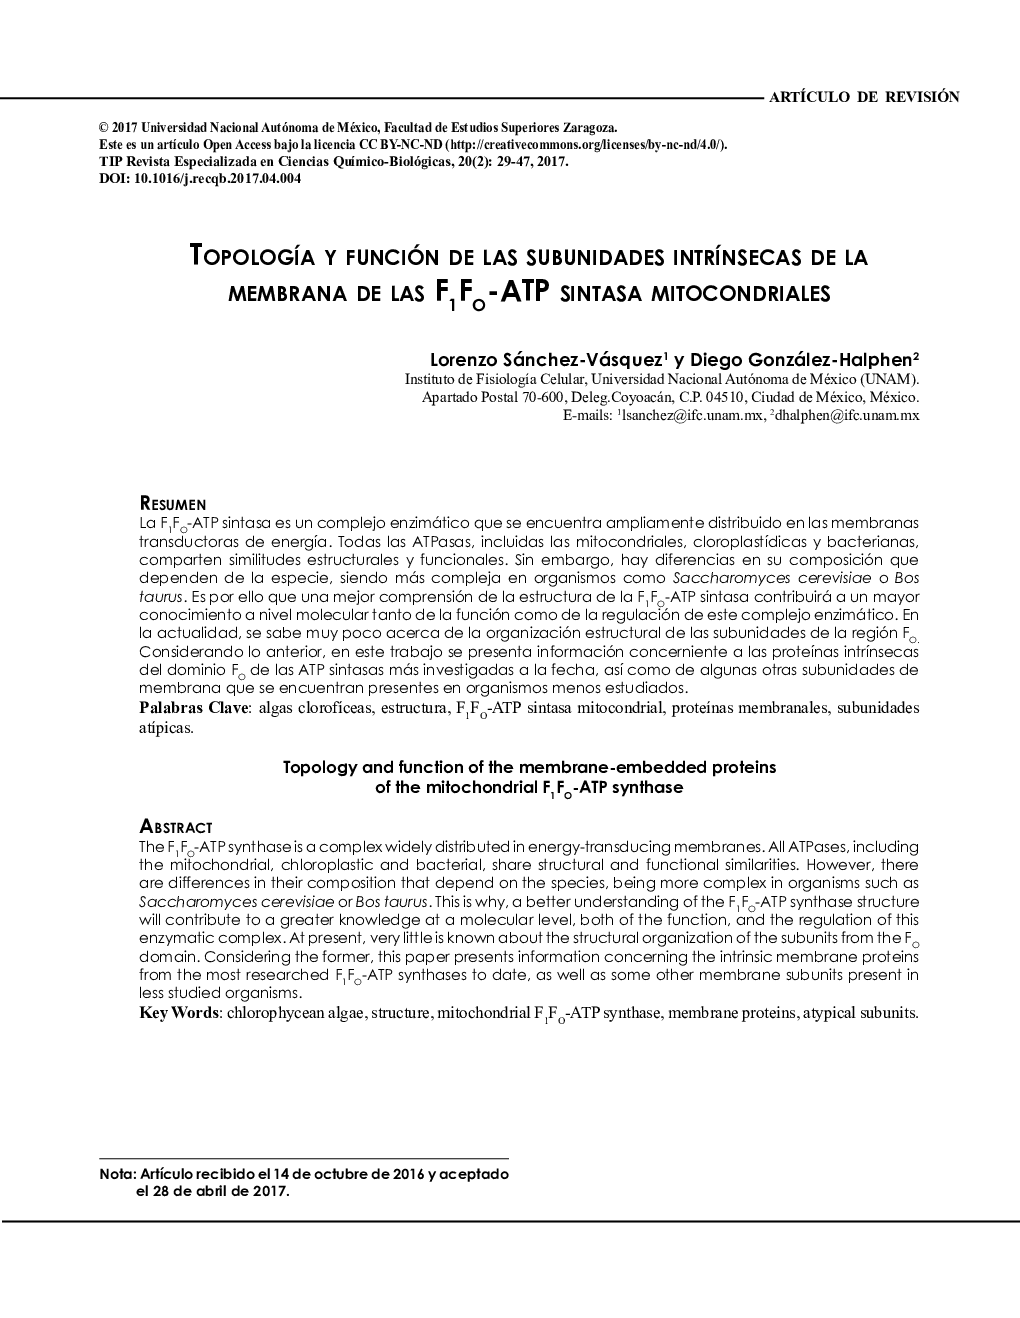 TOPOLOGÍA Y FUNCIÃN DE LAS SUBUNIDADES INTRÍNSECAS DE LA MEMBRANA DE LAS F1FO-ATP SINTASA MITOCONDRIALES